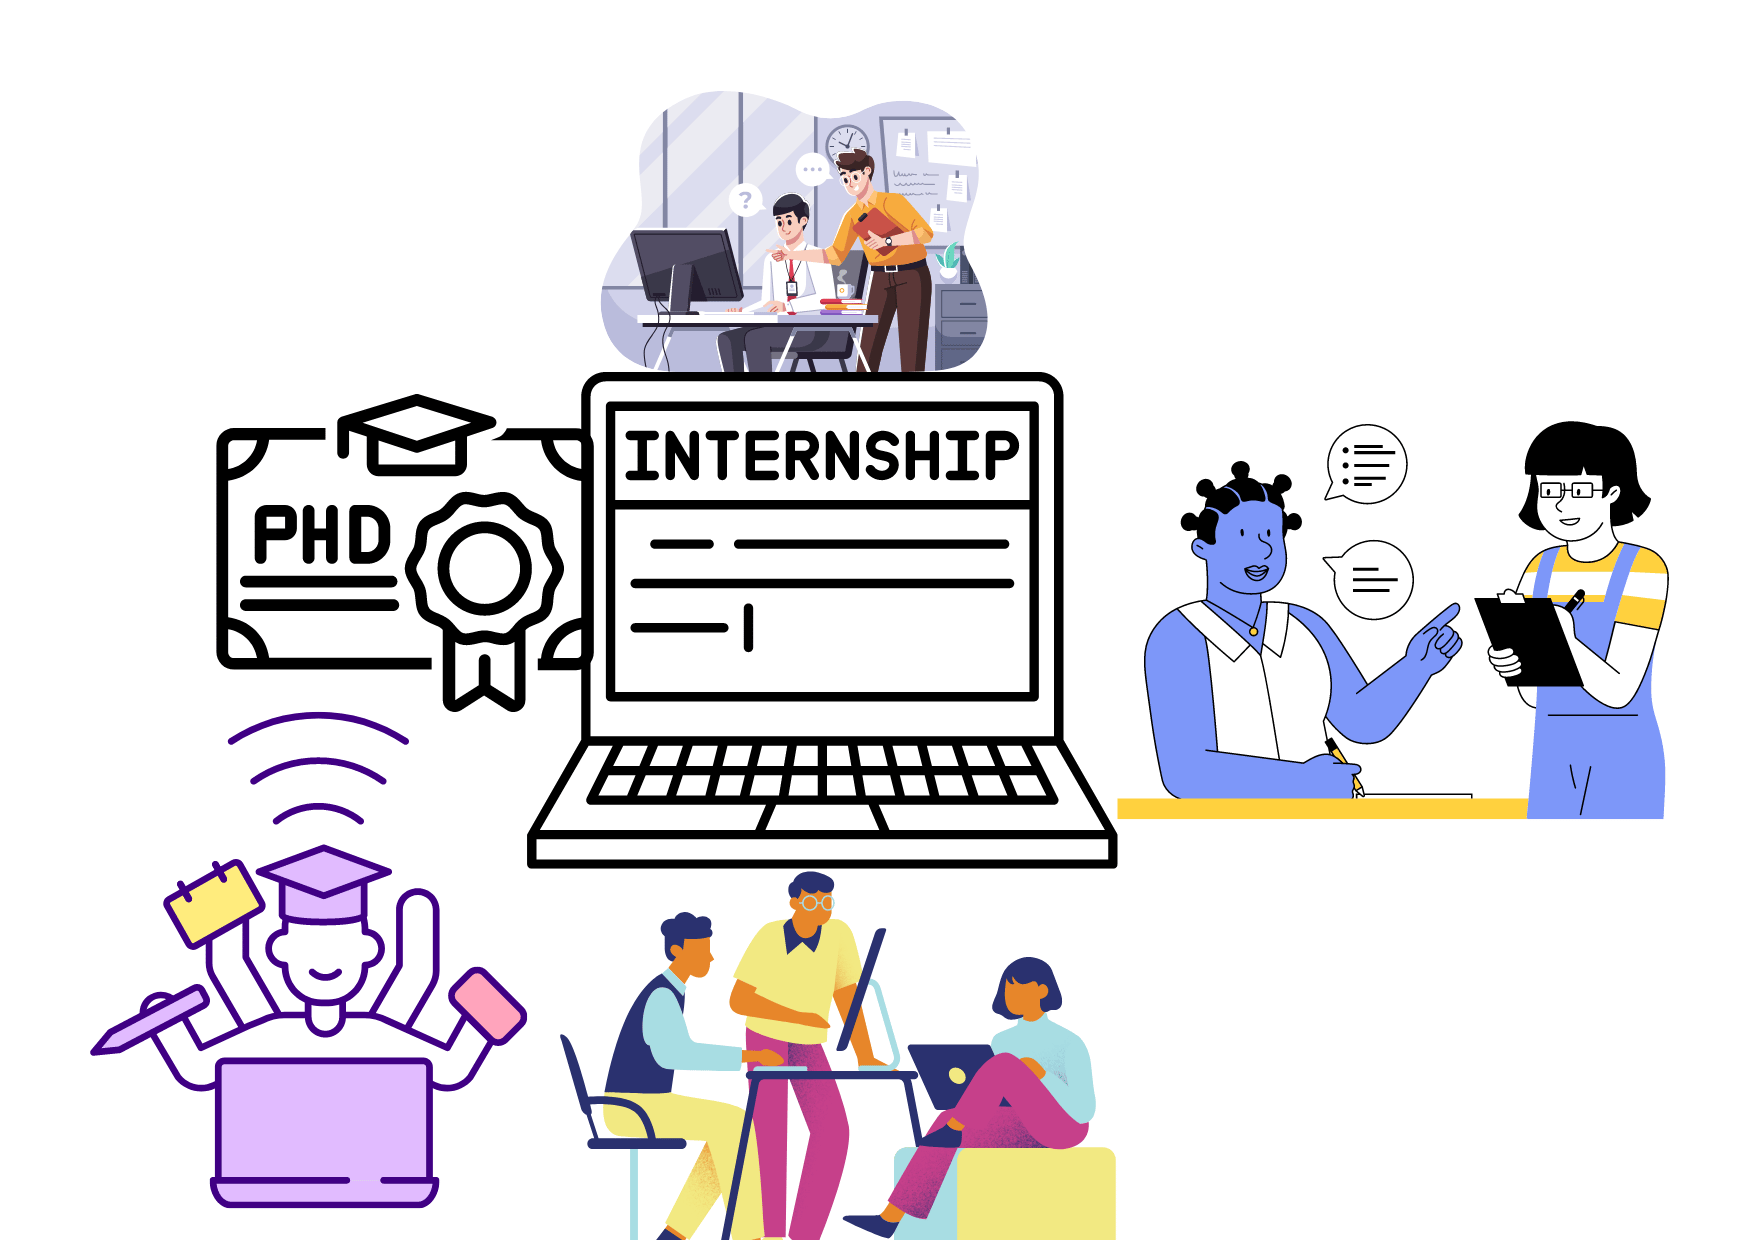 phd student internship